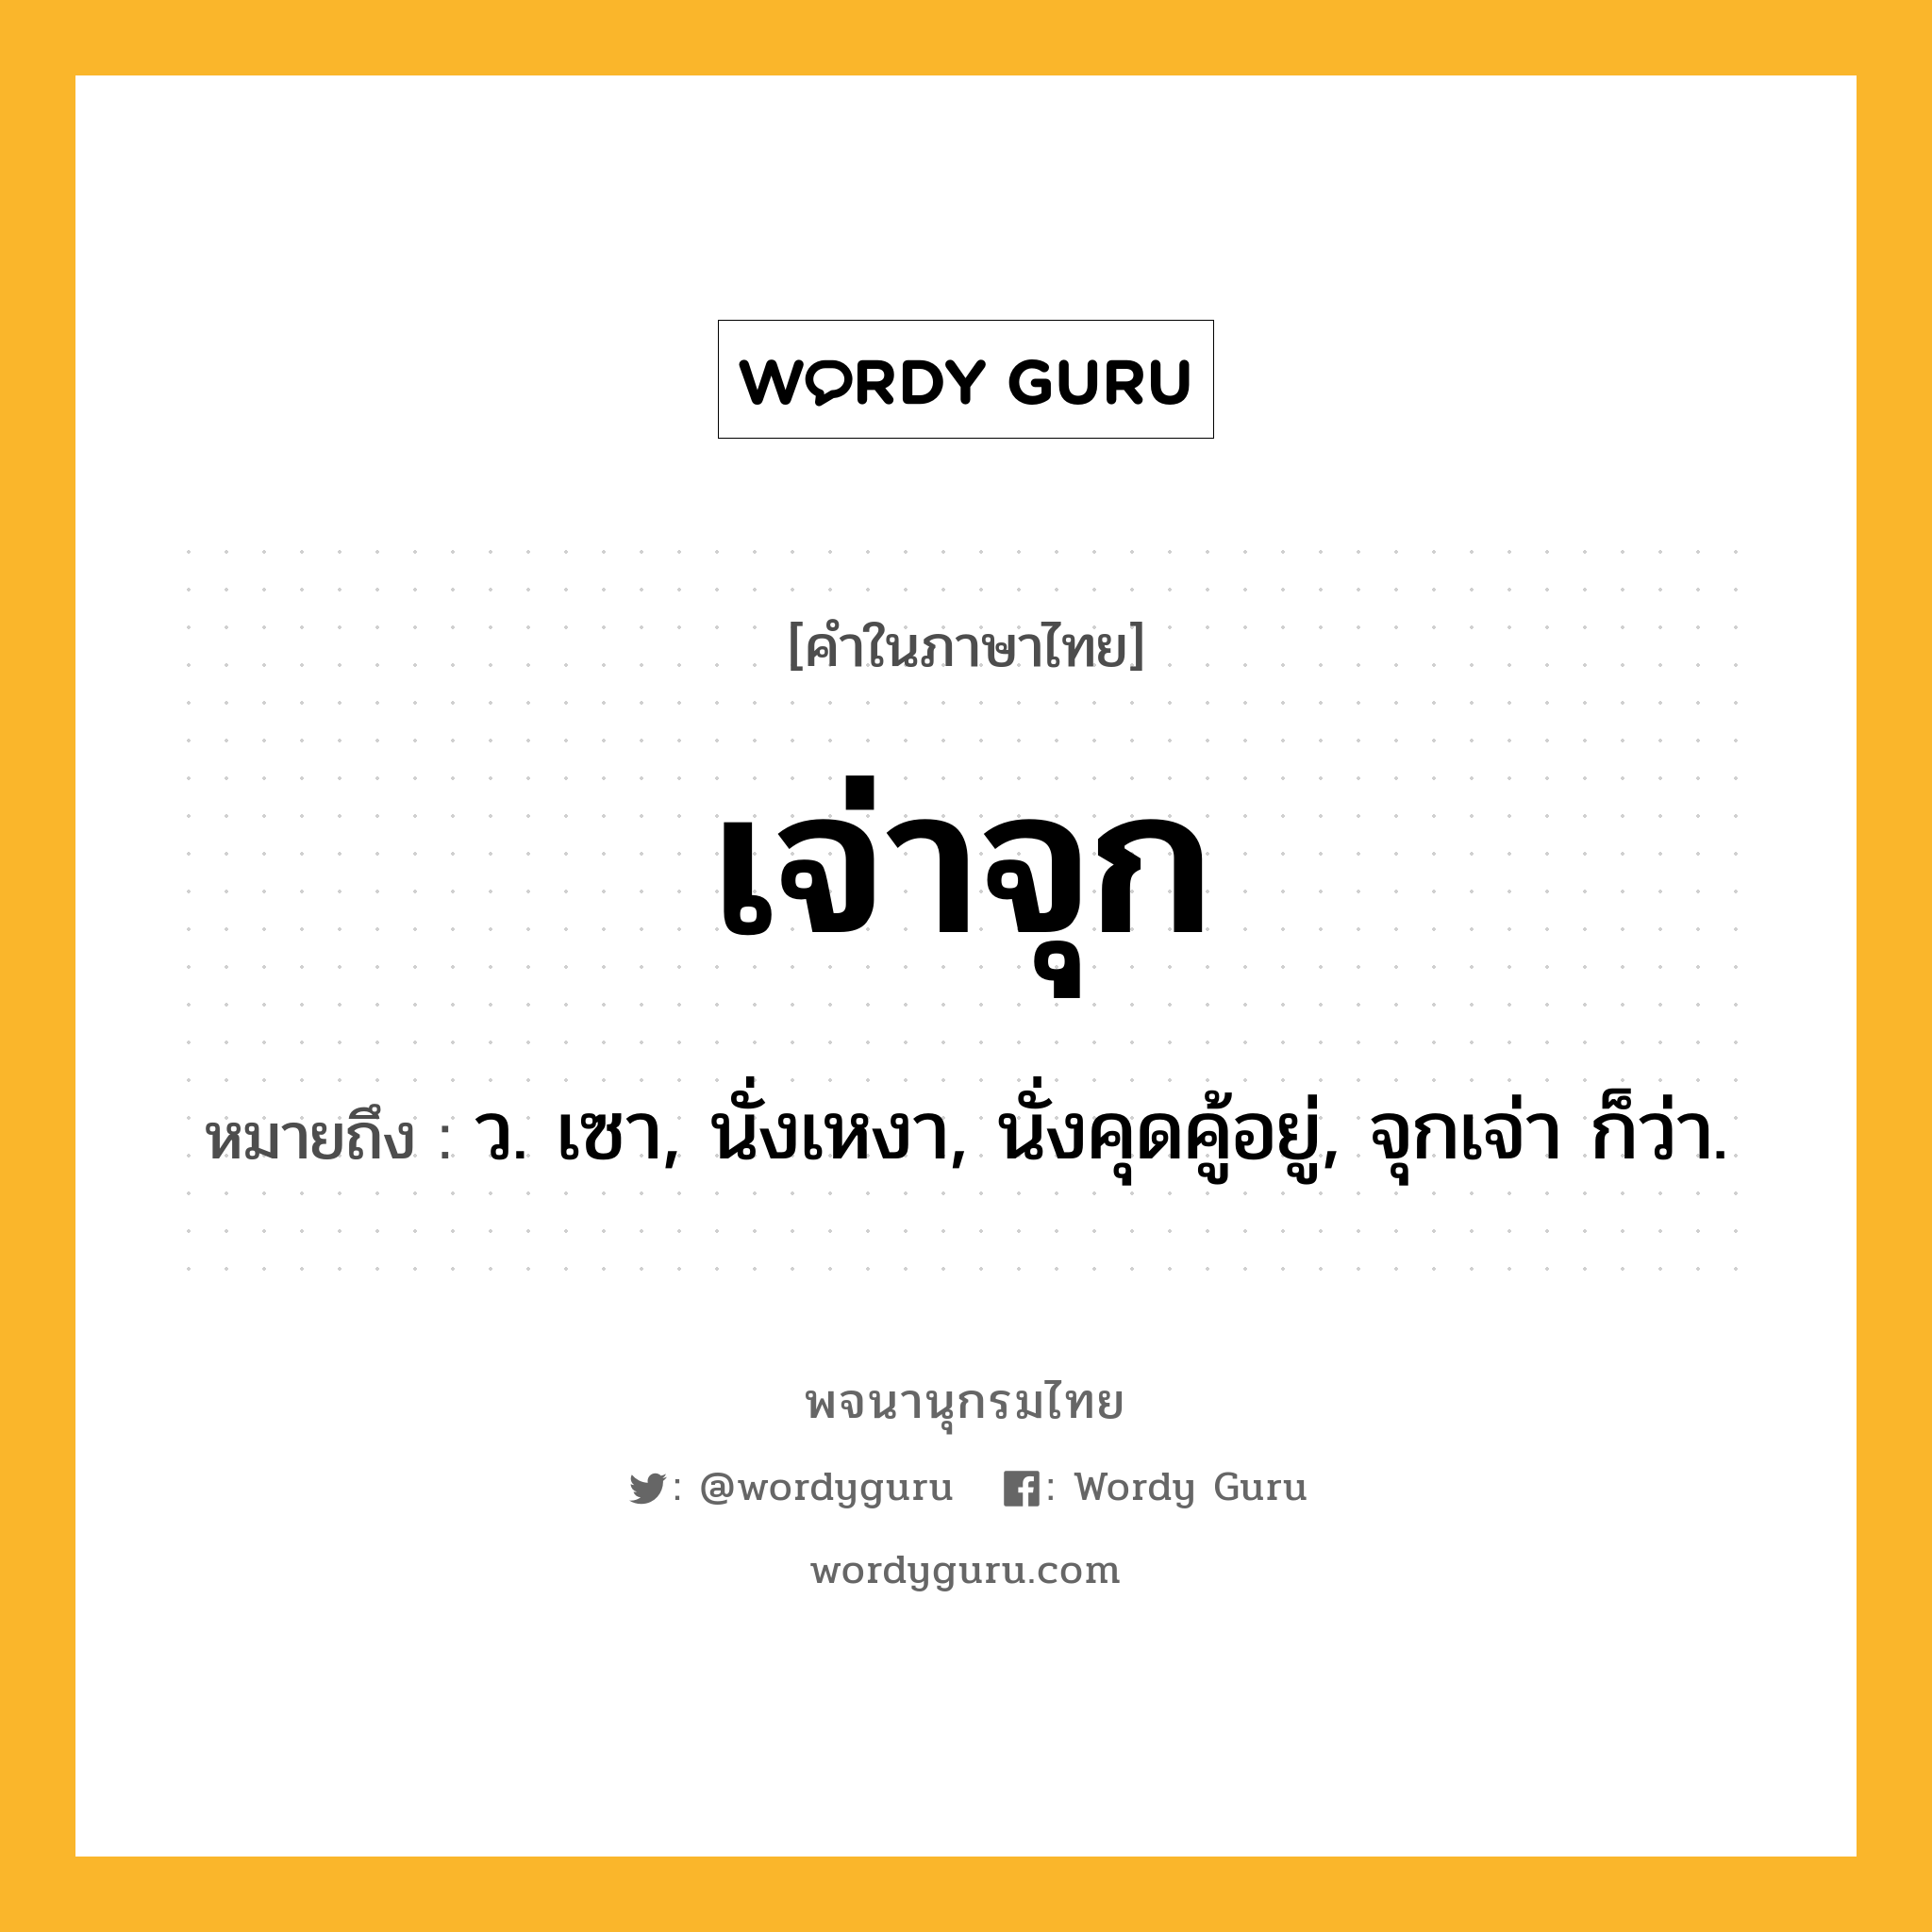 เจ่าจุก ความหมาย หมายถึงอะไร?, คำในภาษาไทย เจ่าจุก หมายถึง ว. เซา, นั่งเหงา, นั่งคุดคู้อยู่, จุกเจ่า ก็ว่า.